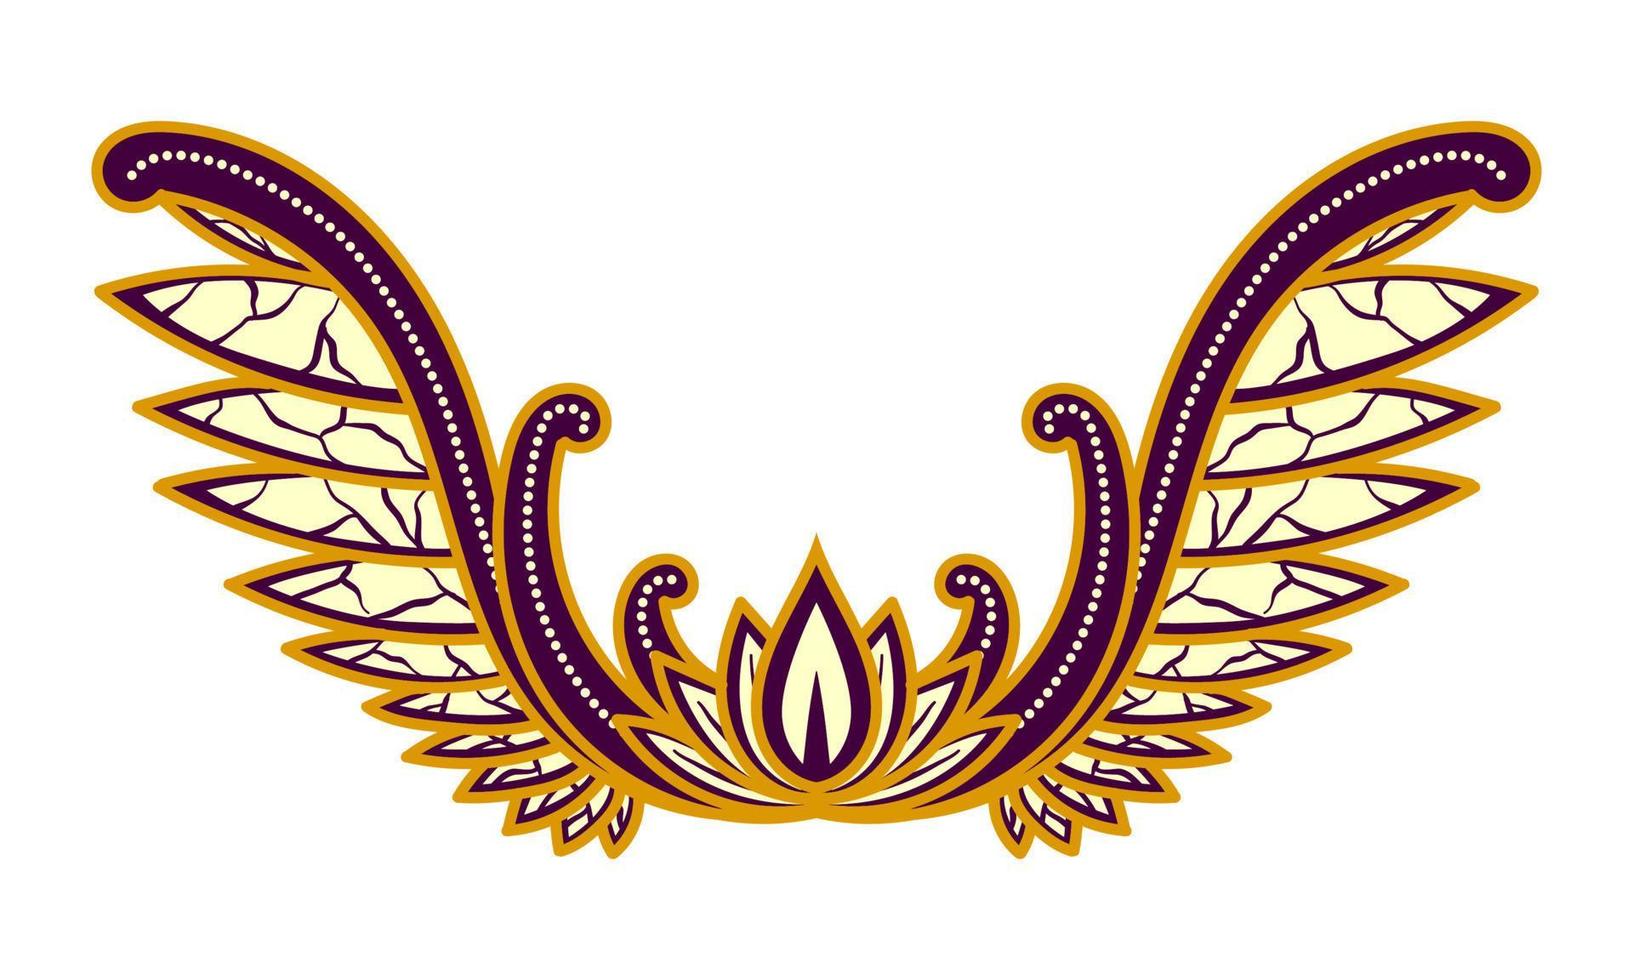 cultura javanesa de ilustração de ornamento floral. forma de asas. cor chocolate, roxo e creme harmonia de cores. isolado no fundo branco. vetor eps 10